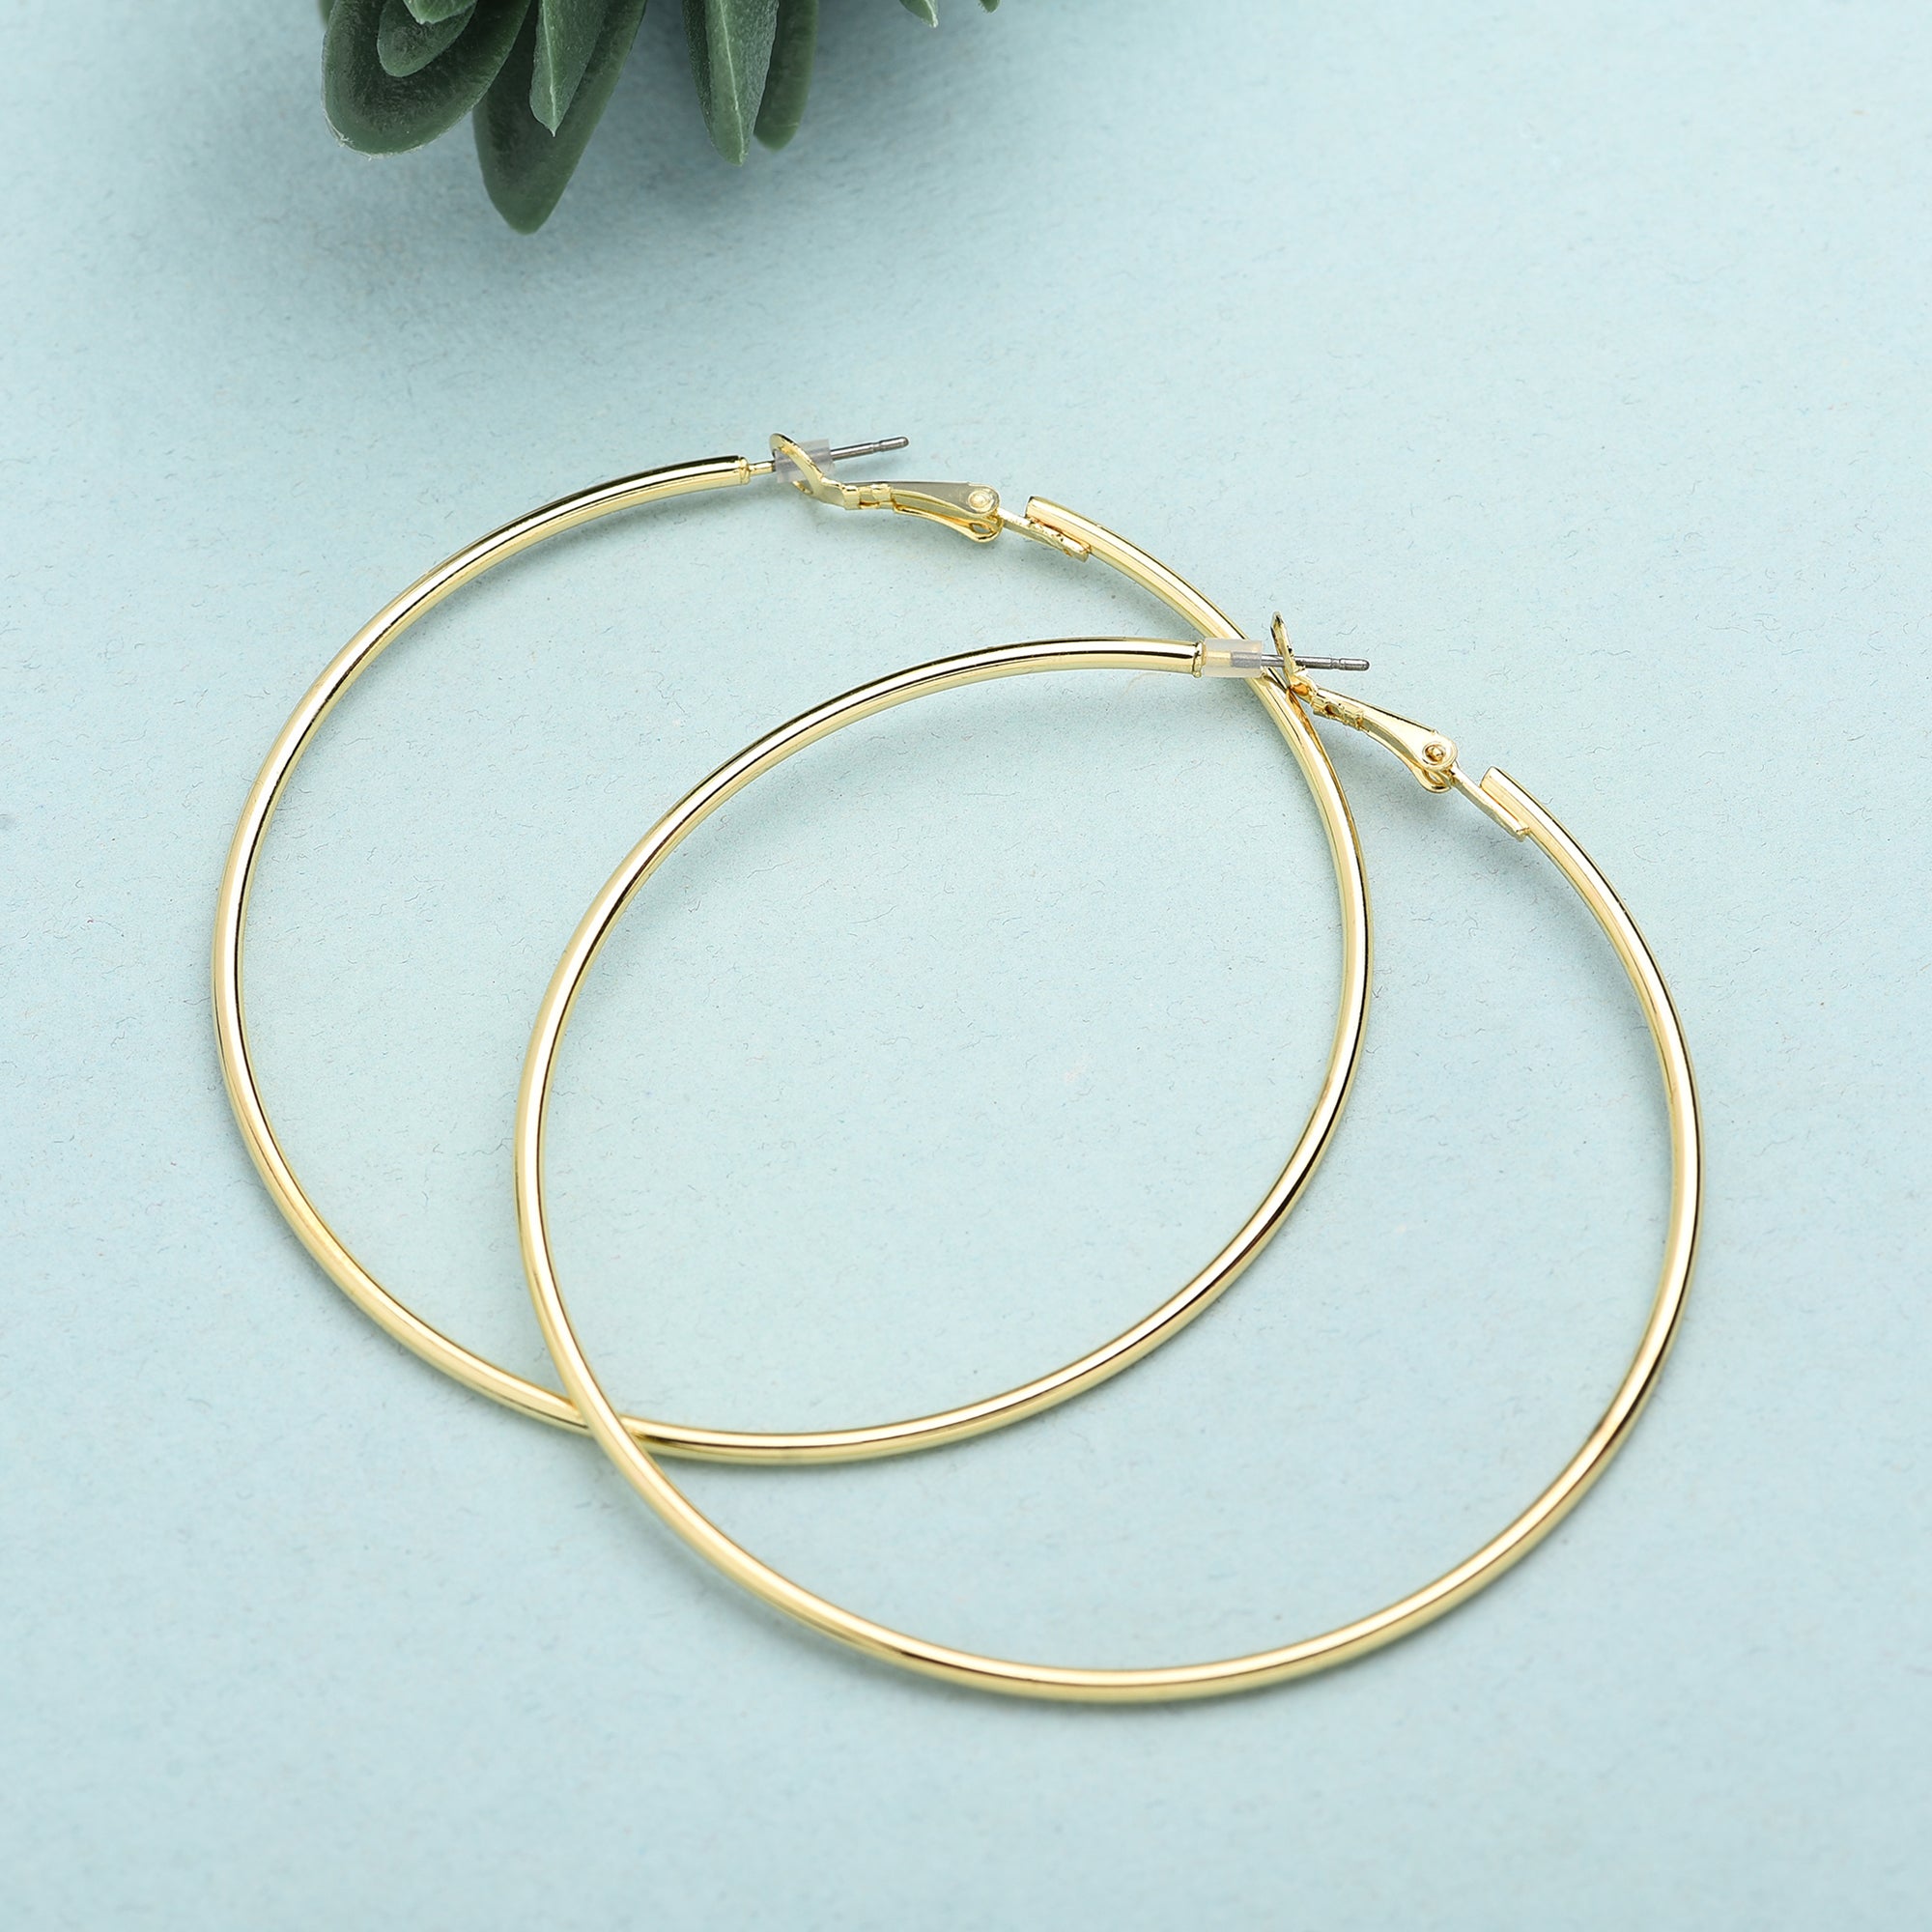 Accessorize London Women's Gold Mid Size Simple Hoop Earring